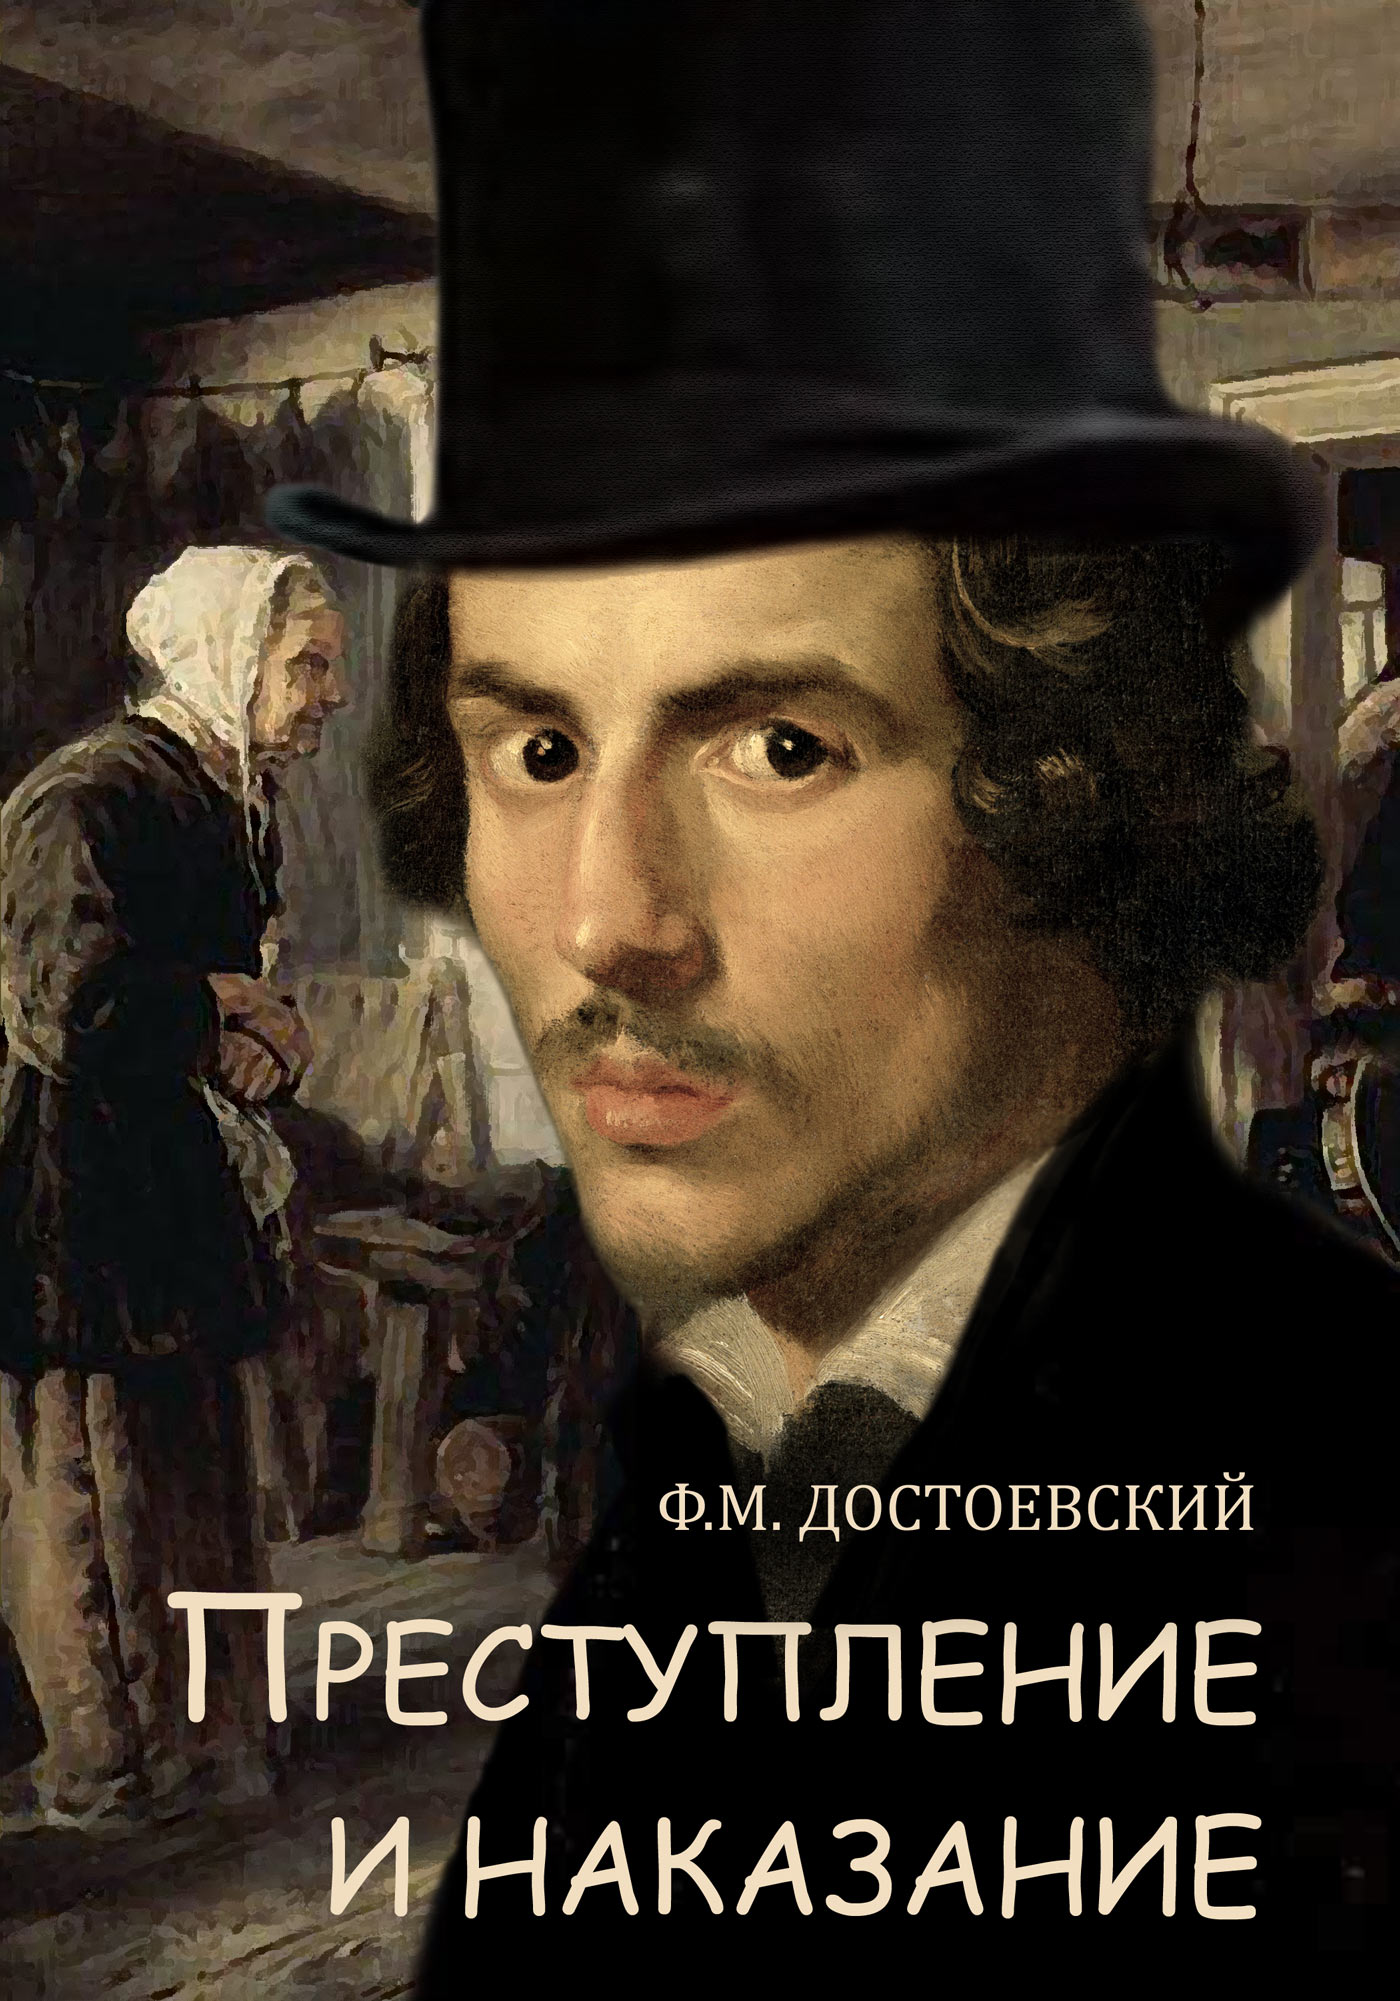 Федор Достоевский «Преступления и наказание»